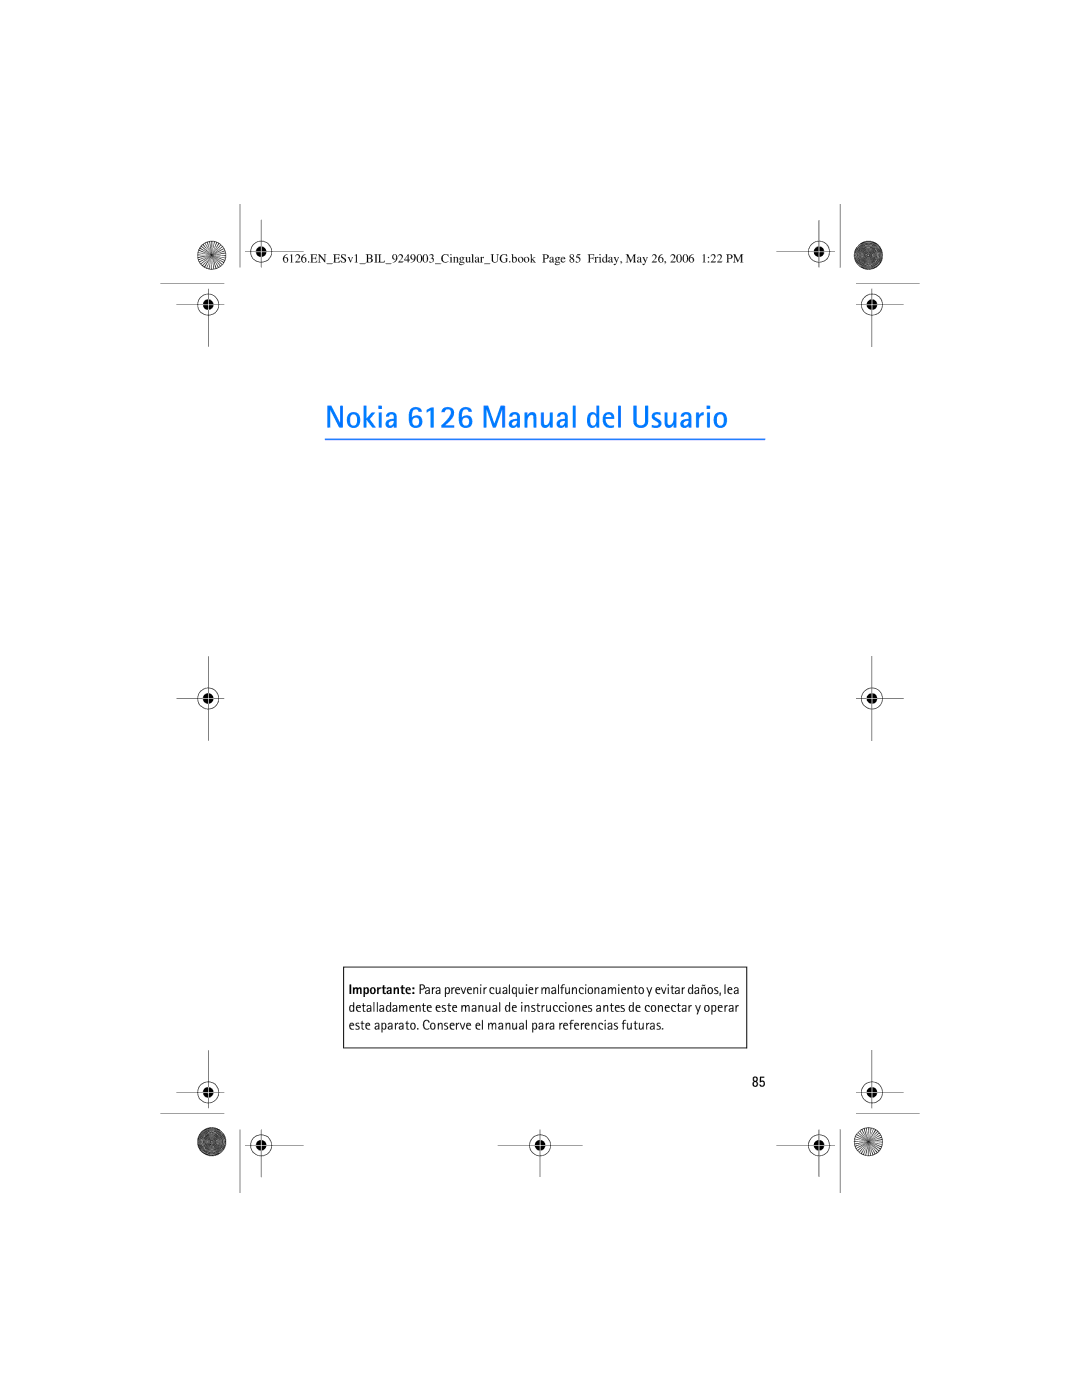 Nokia manual Nokia 6126 Manual del Usuario 